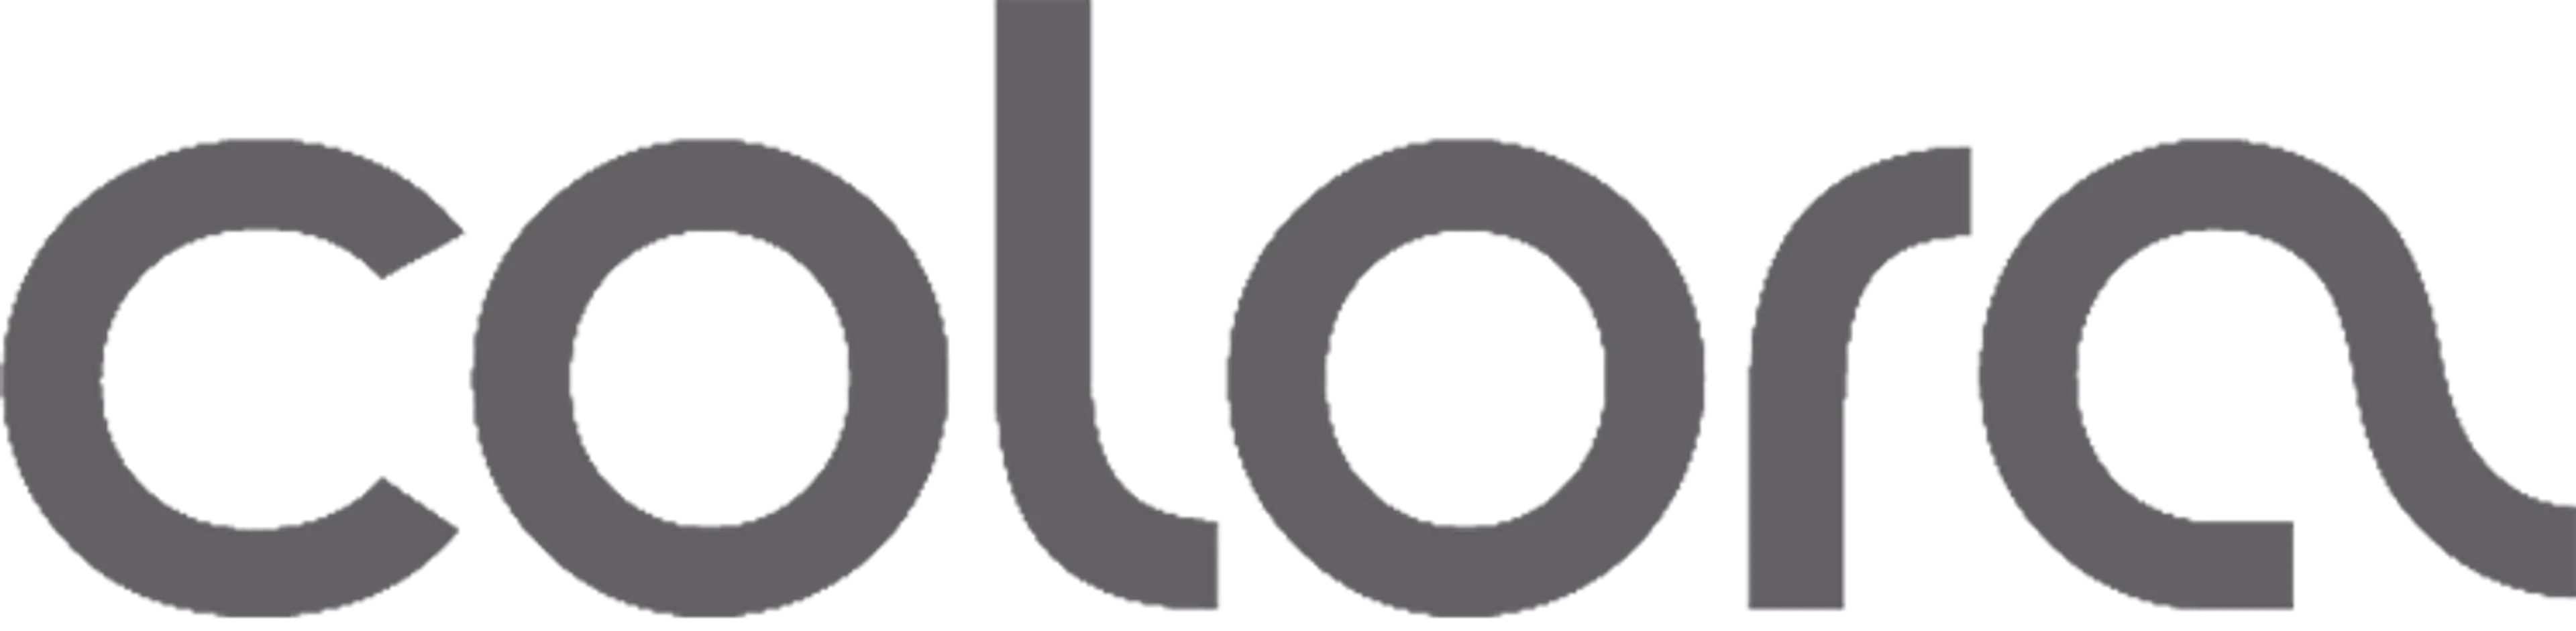 COLORA logo